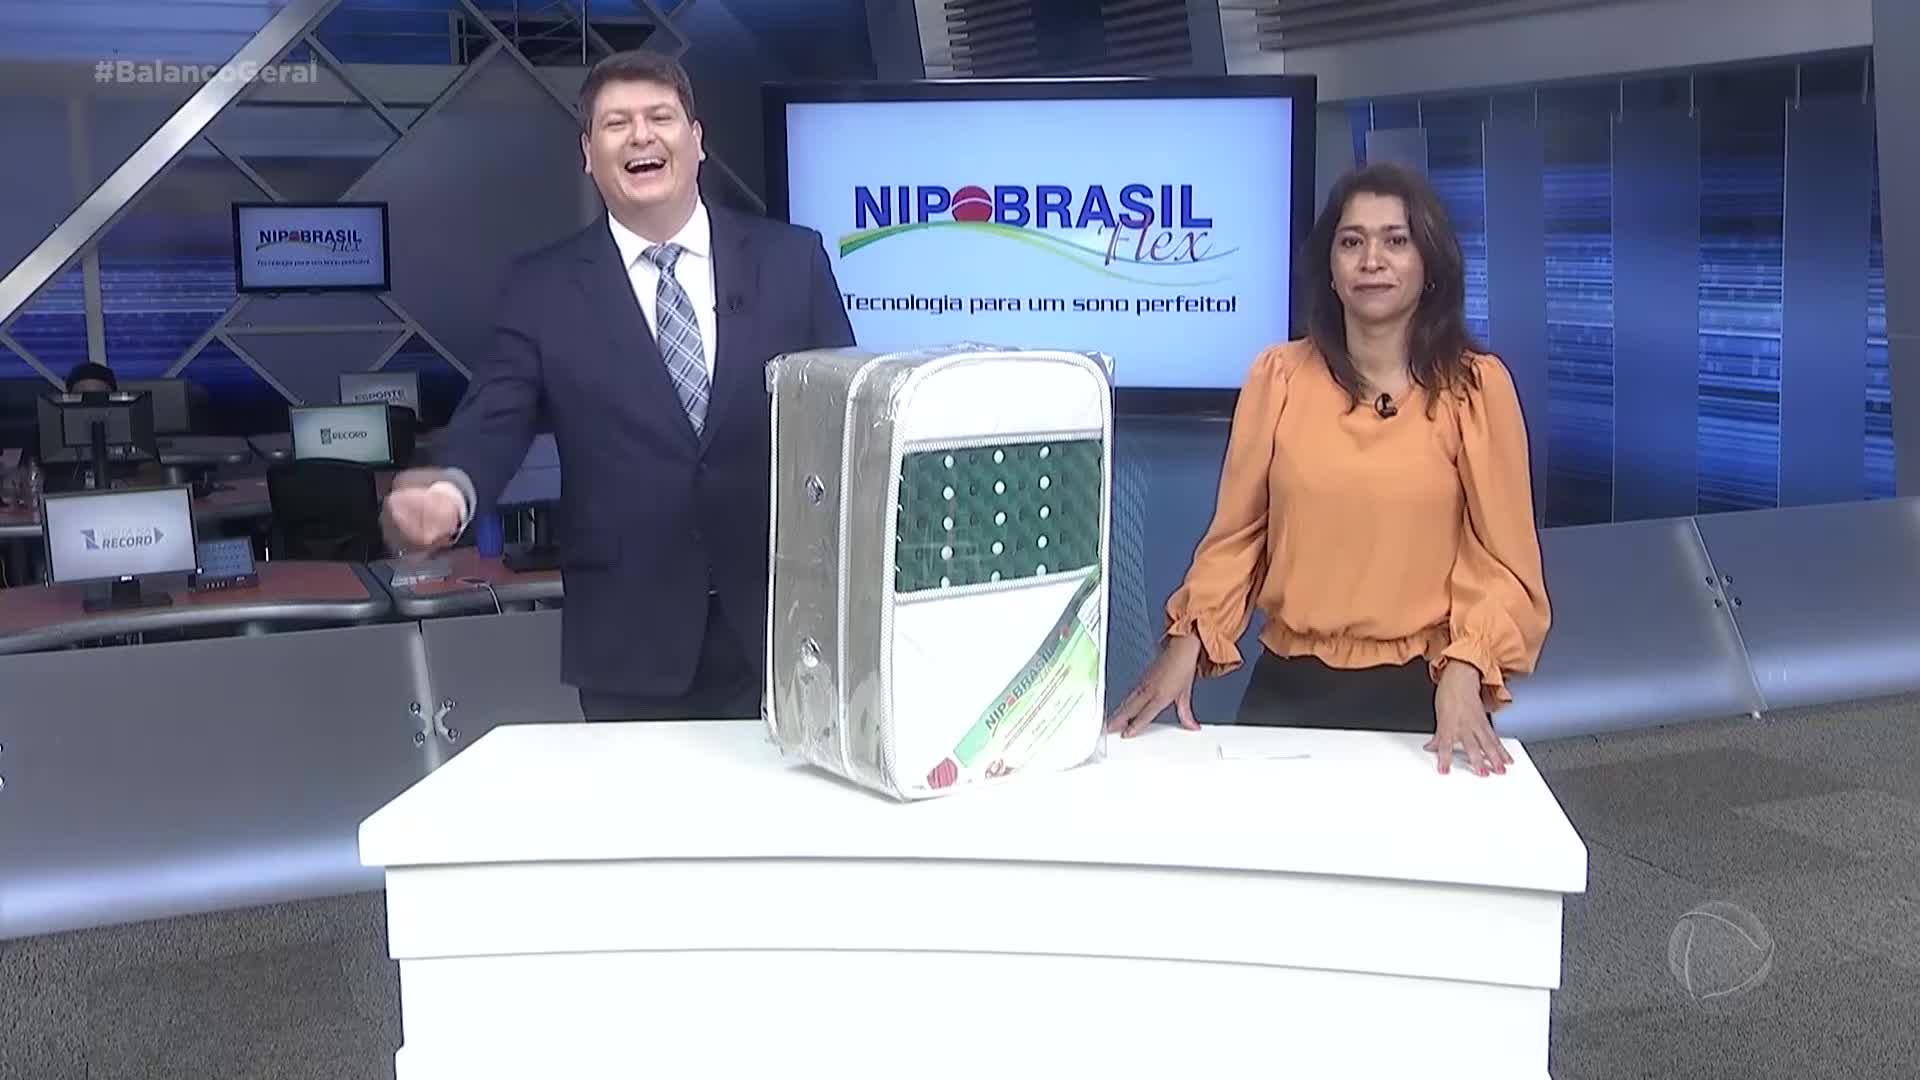 Vídeo: Nipo Brasil Flex - Balanço Geral - Exibido em 17/06/2021